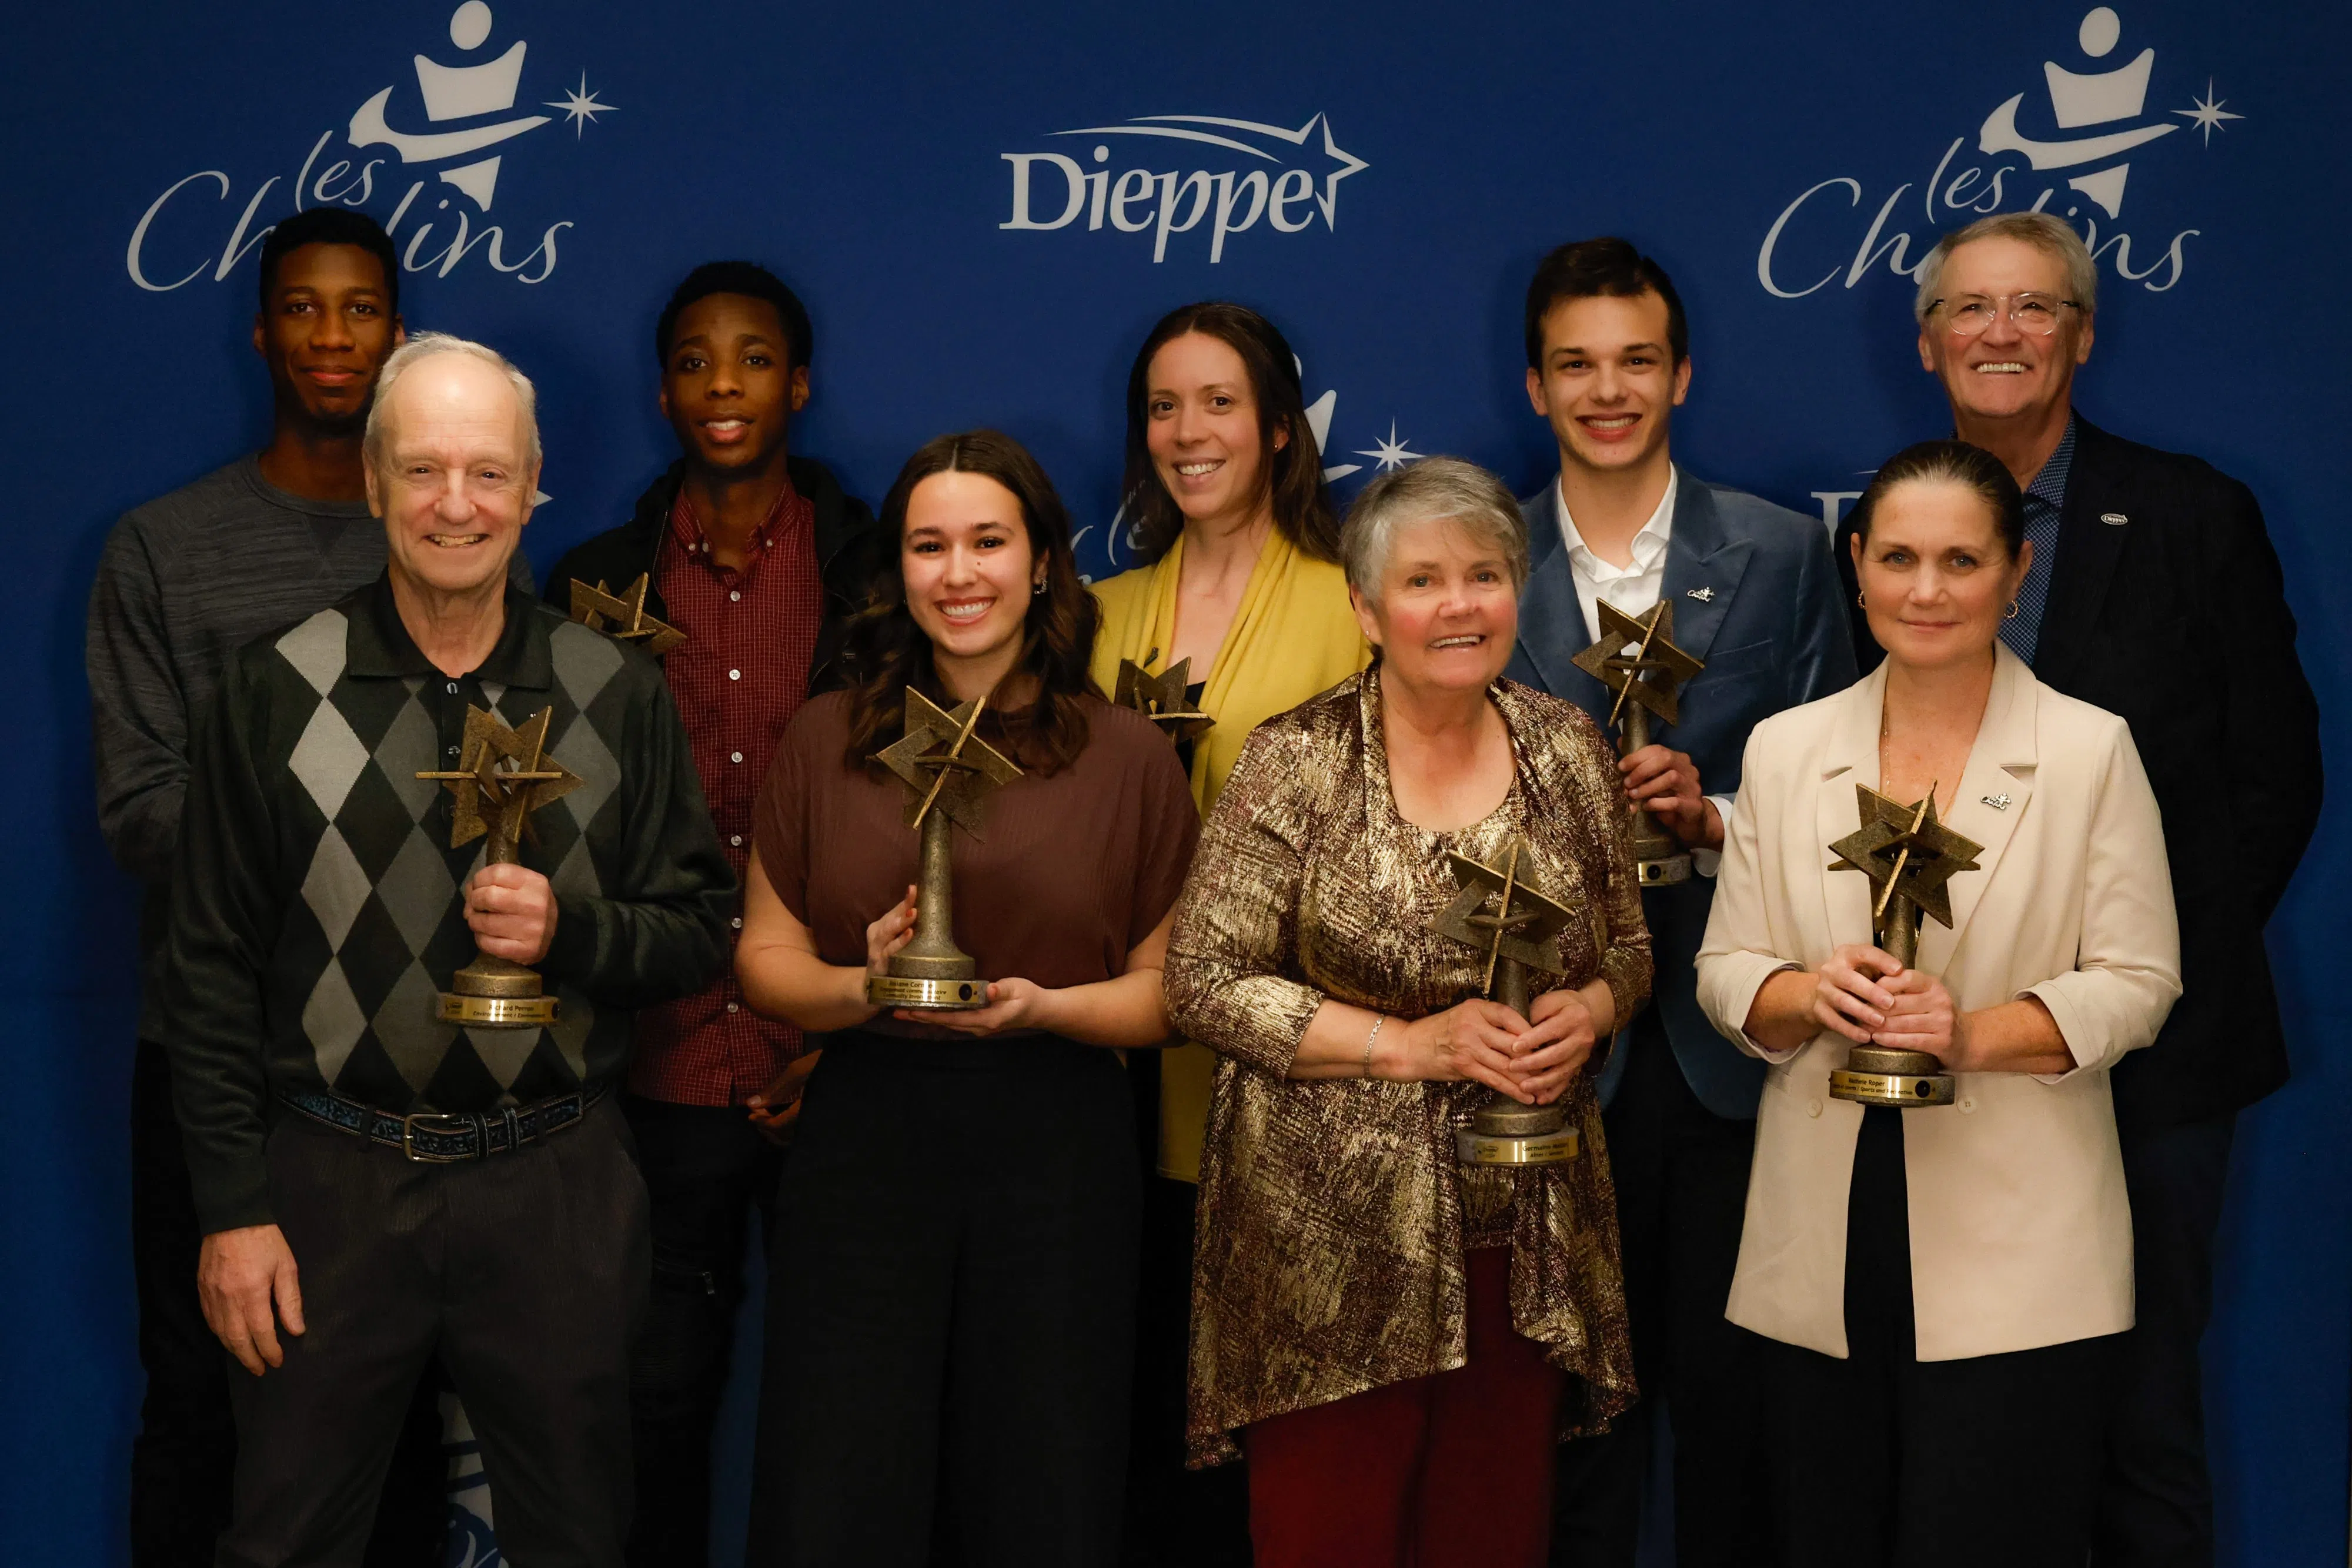 Dieppe honours volunteers during Les Chalins gala